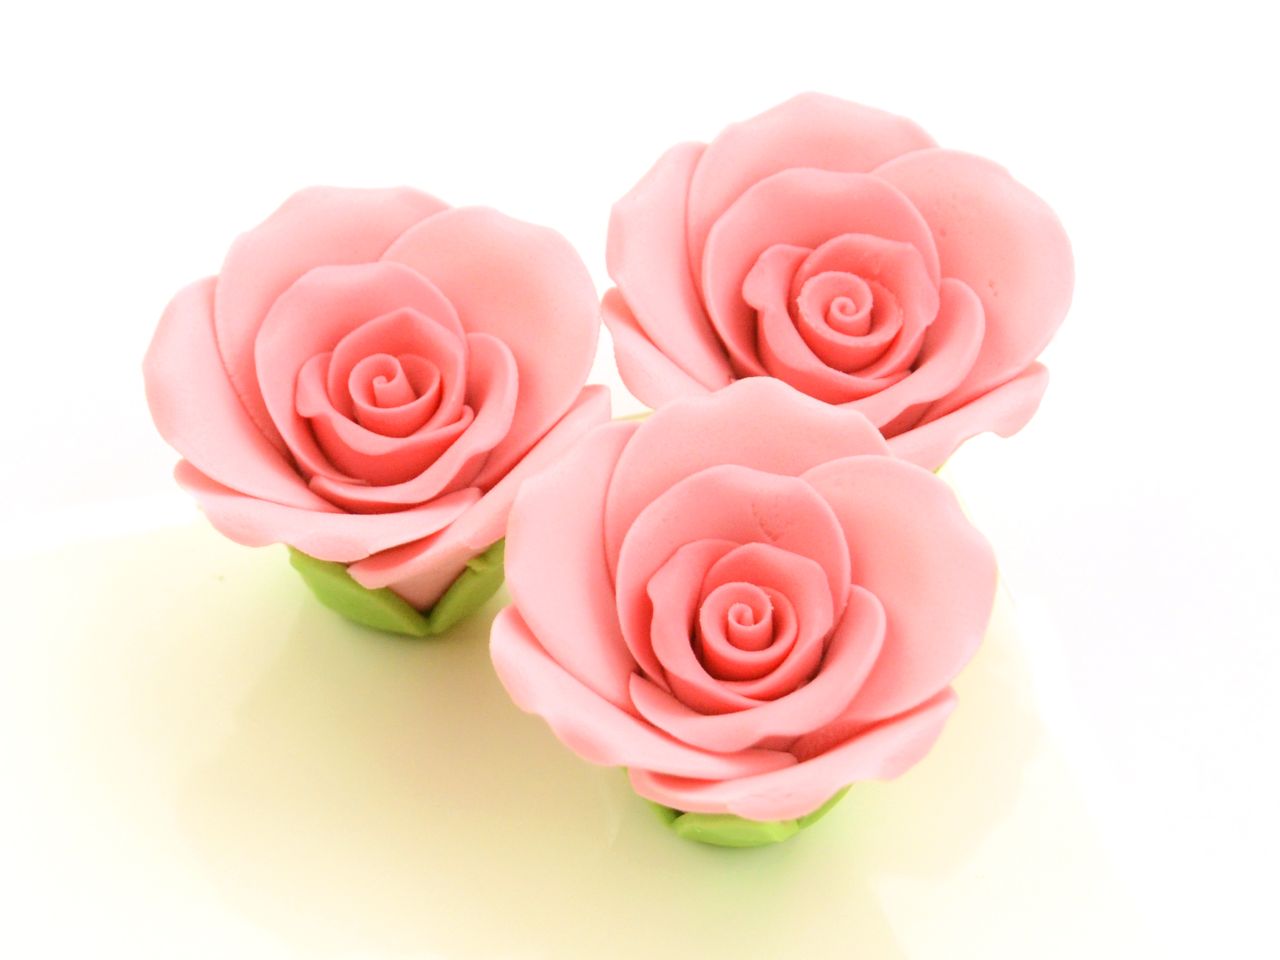 Zucker-Rosen, Rosa, 3 Stück, 3,5 x 3 cm